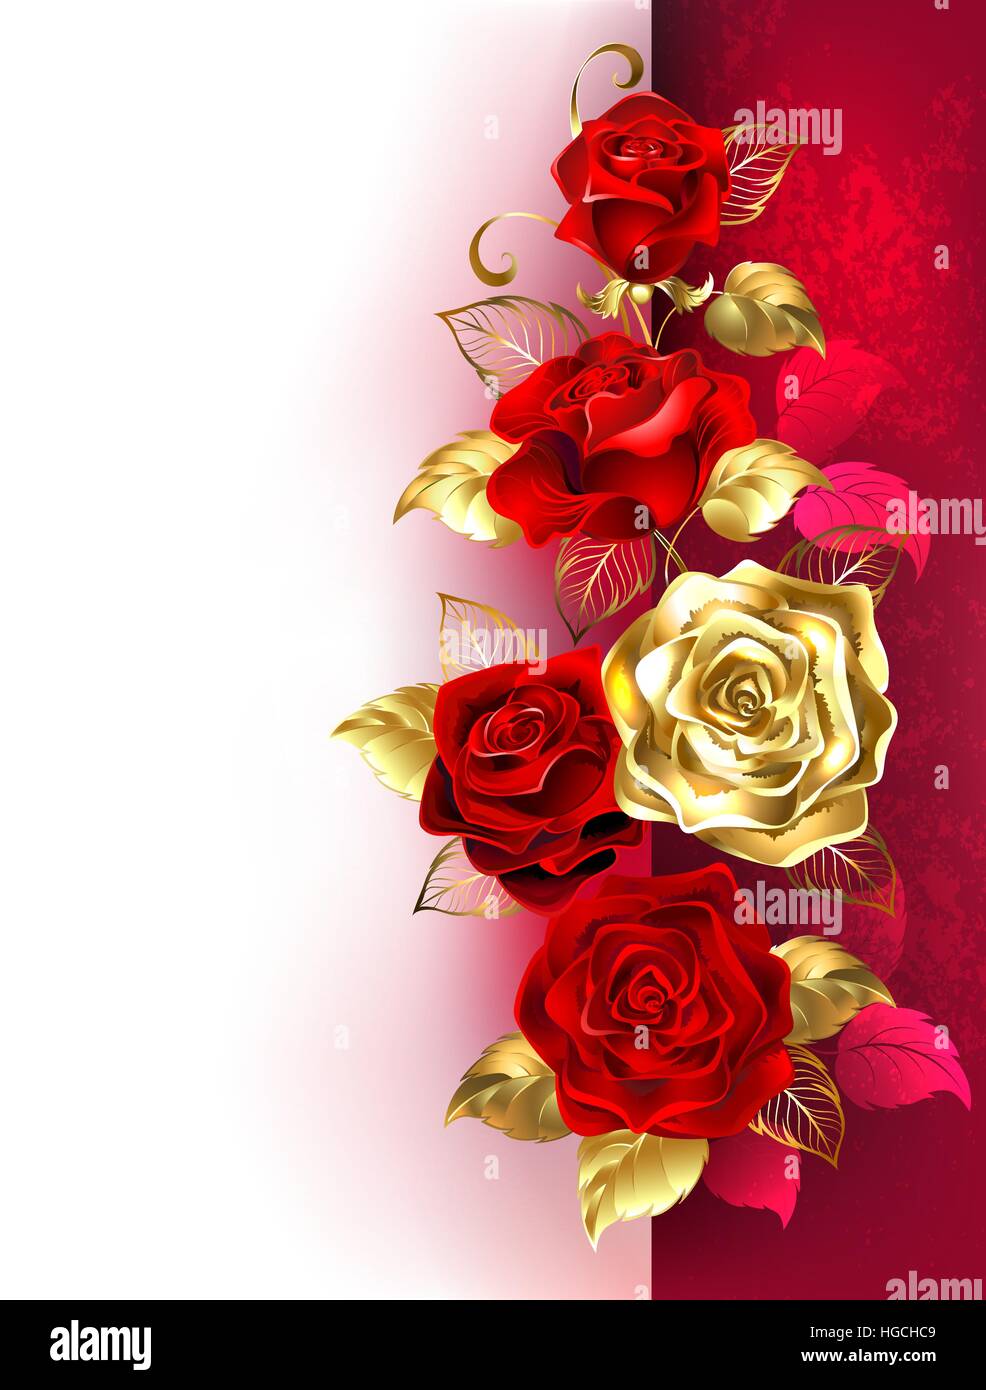 Design mit roten und goldenen Rosen auf weißem und rotem Hintergrund.  Design mit Rosen Stock-Vektorgrafik - Alamy